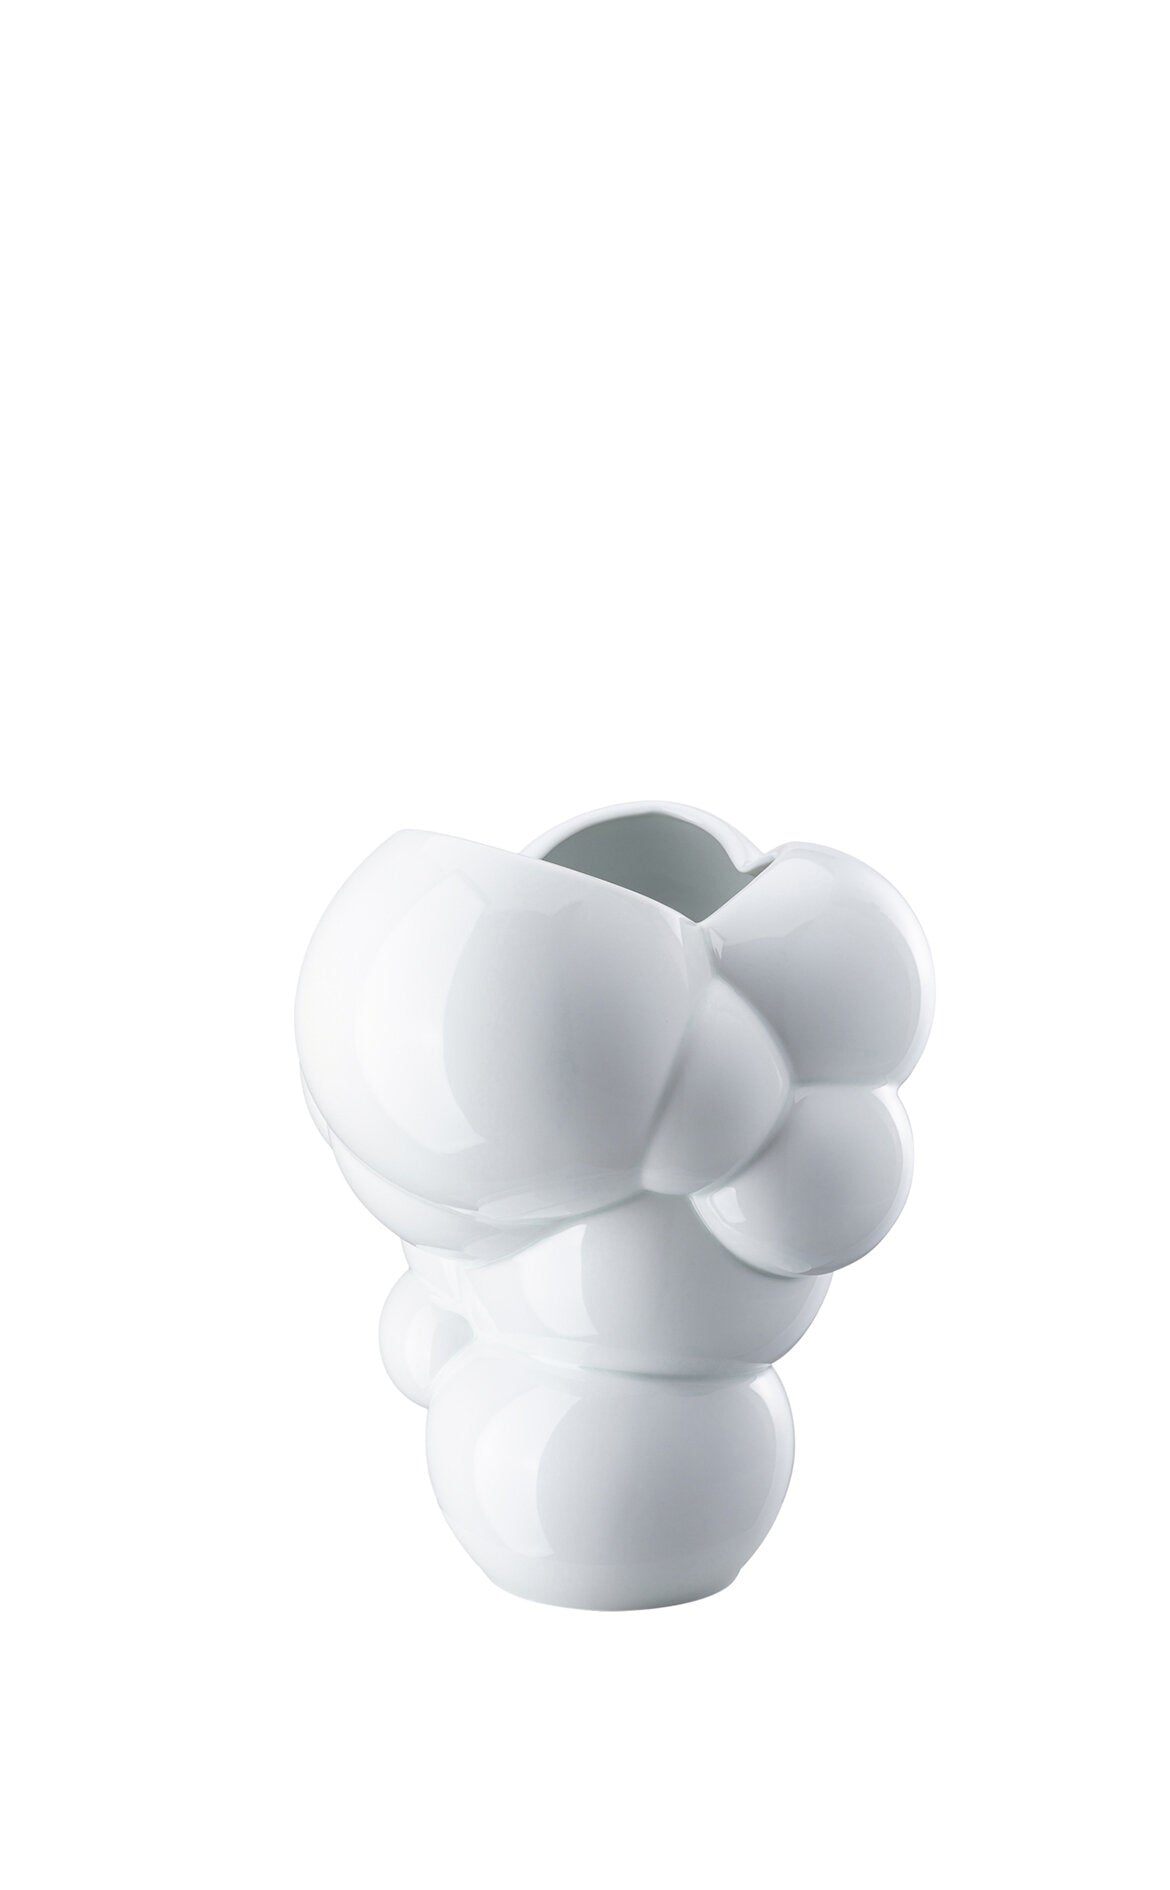 ROSENTHAL Skum Beyaz Porselen Vazo 26 cm D’Maison 